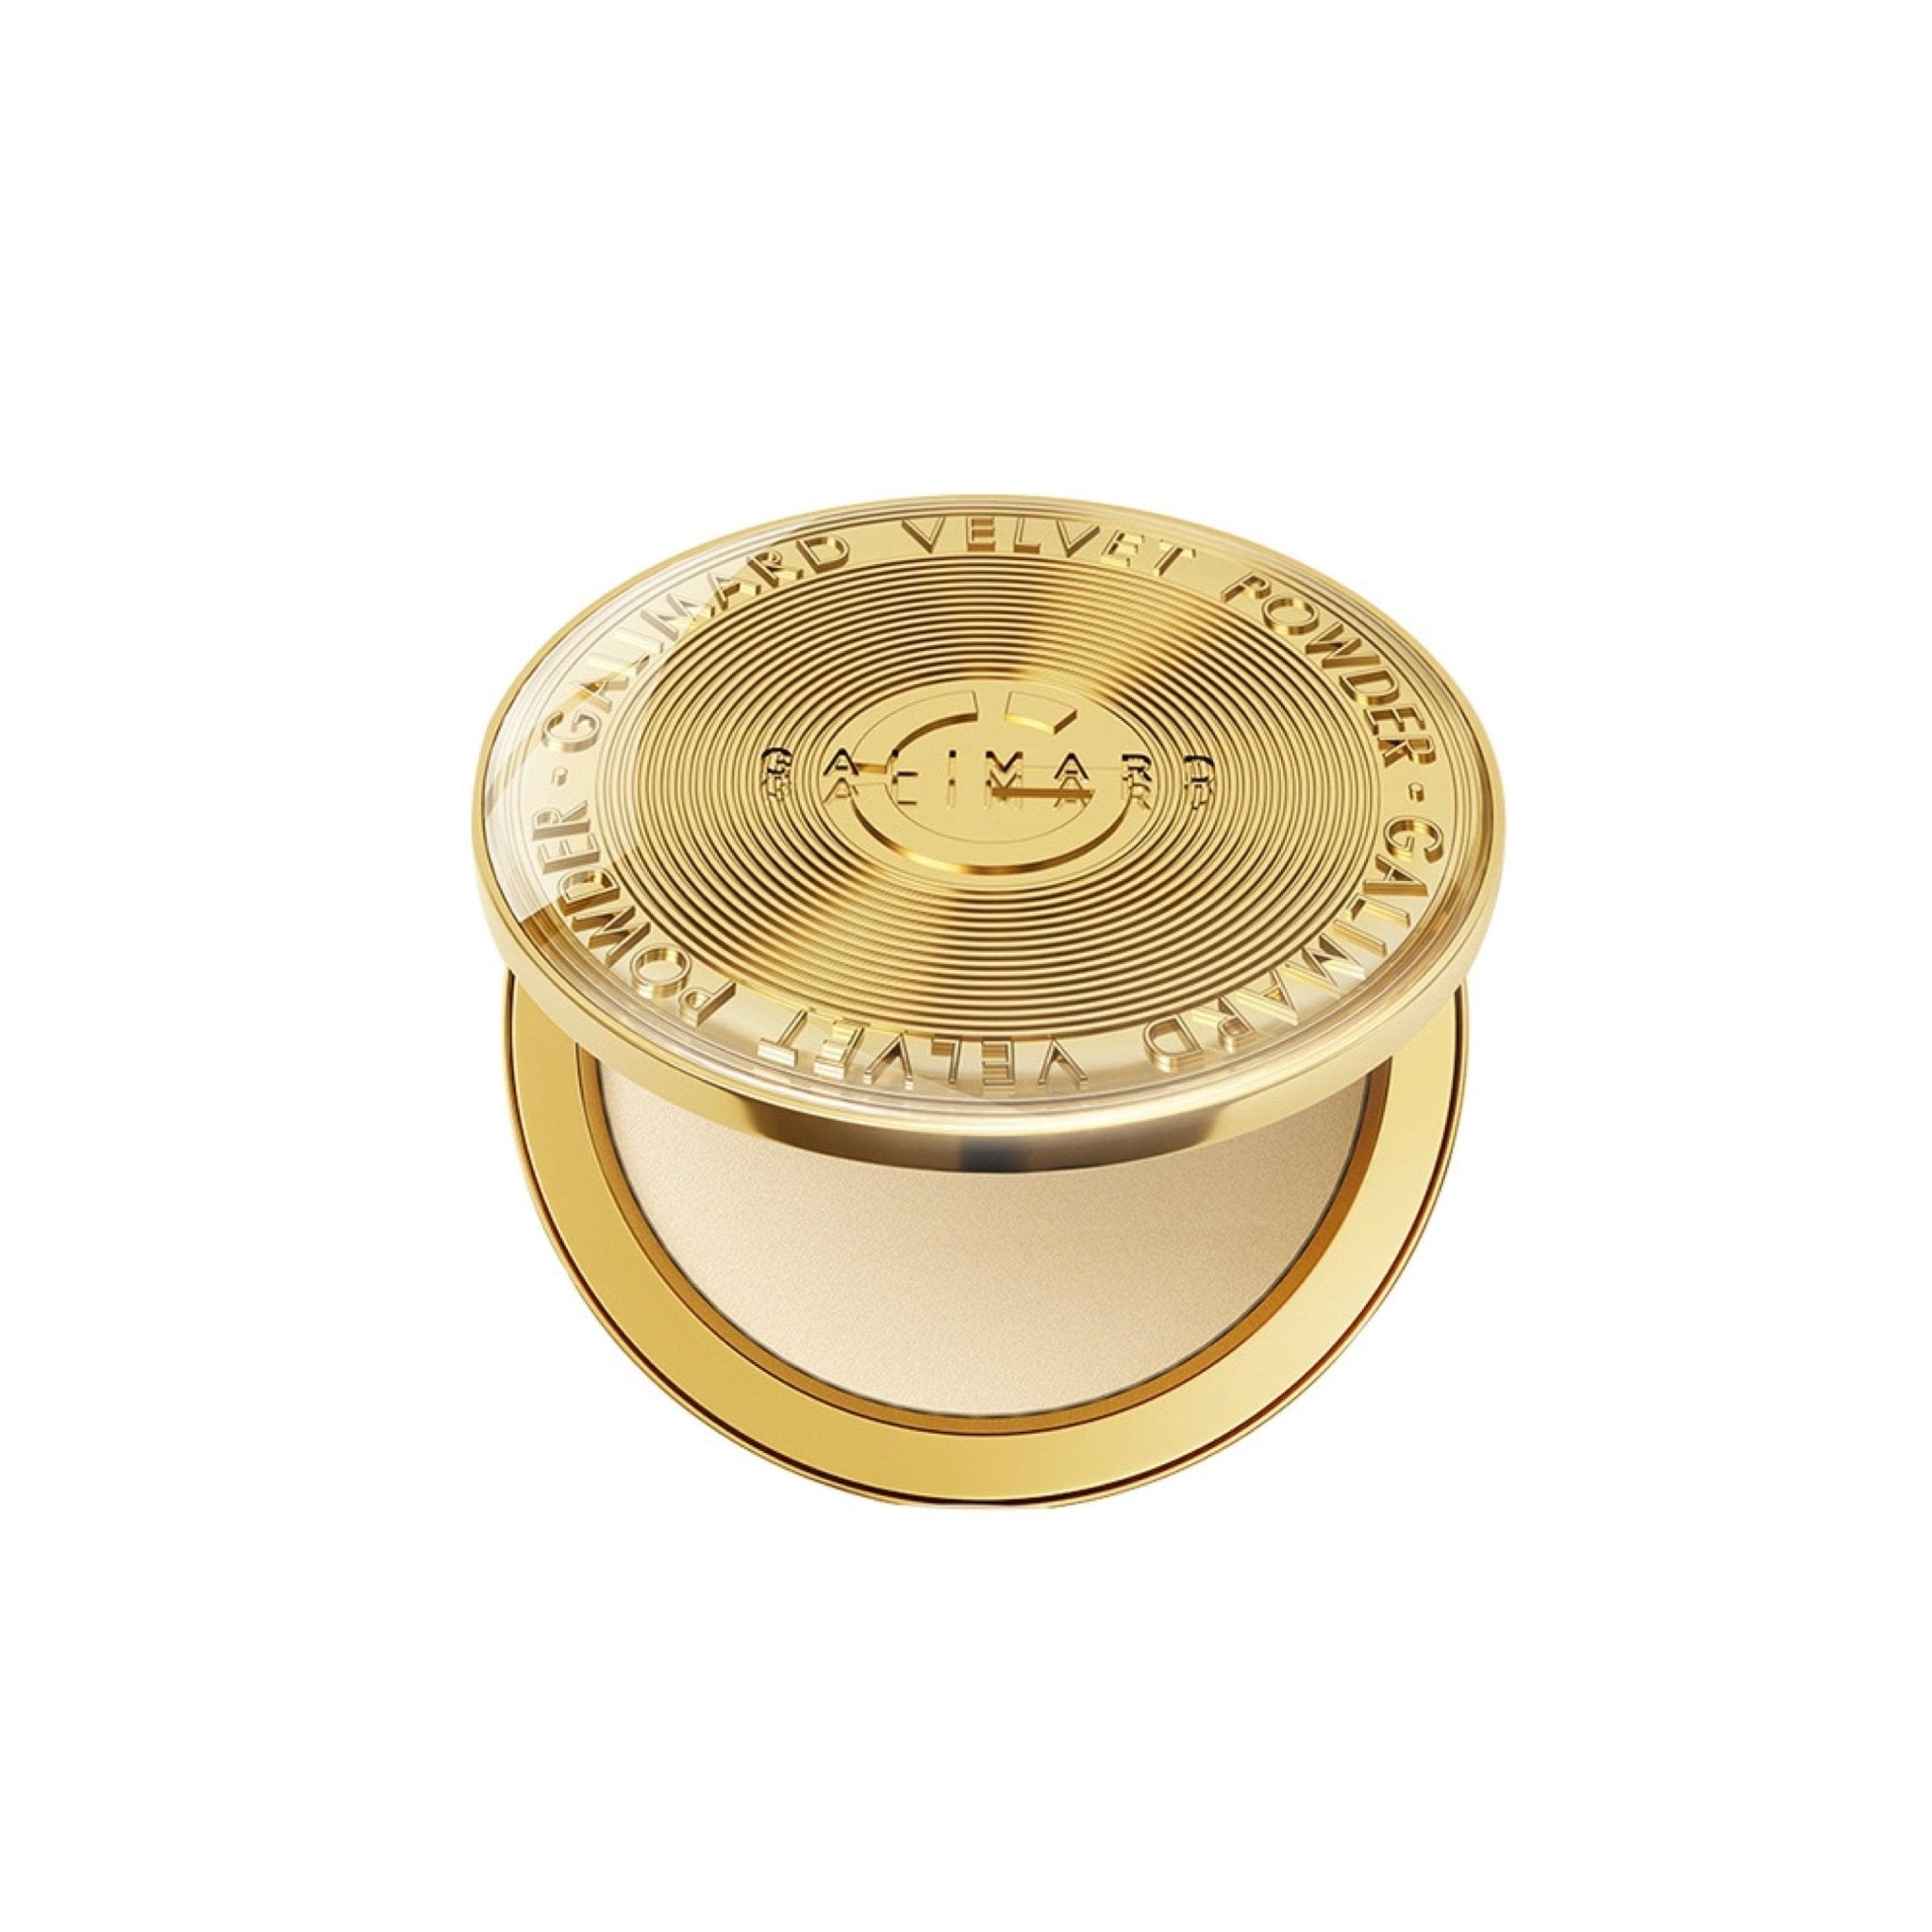 Galimard Gold Coin Powder GM009 - Chic Decent